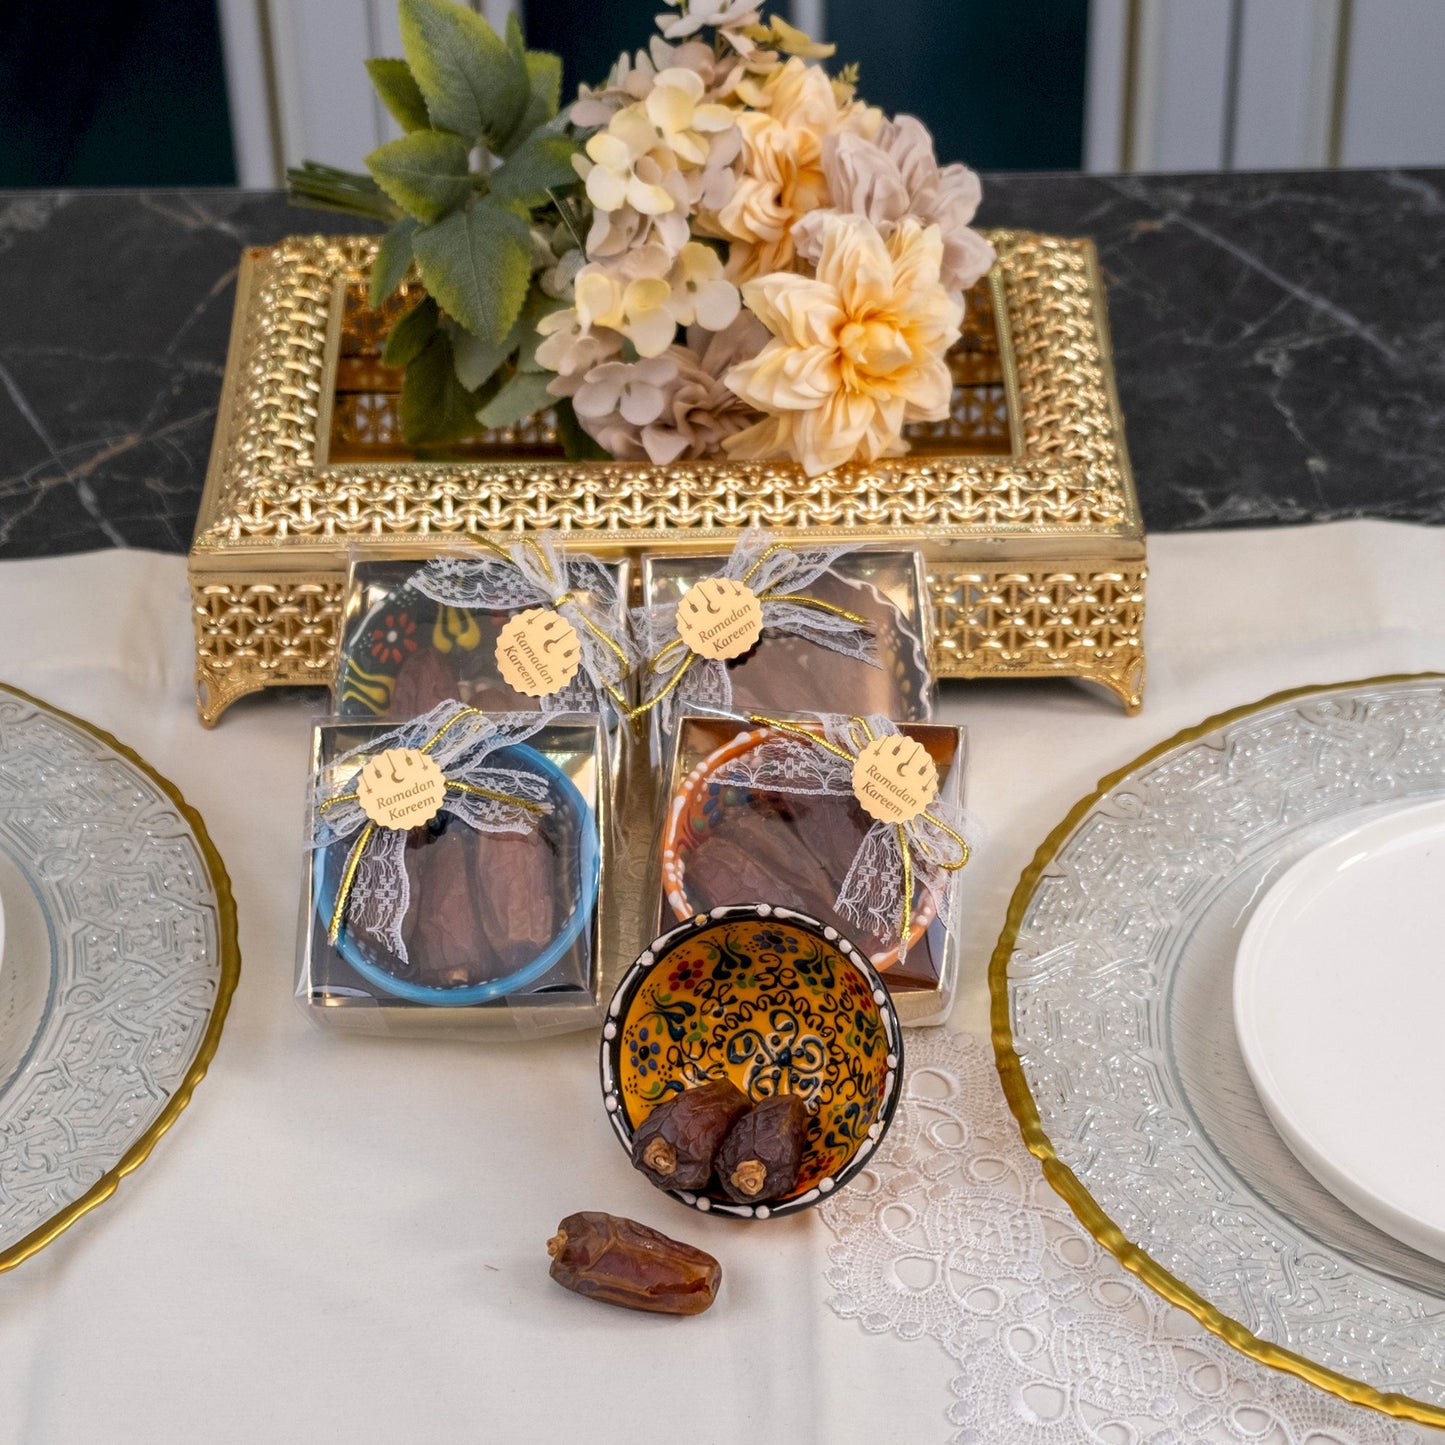 Personalized Hurma Dates in Cini Bowl Favors Ramadan Eid Islamic Gift